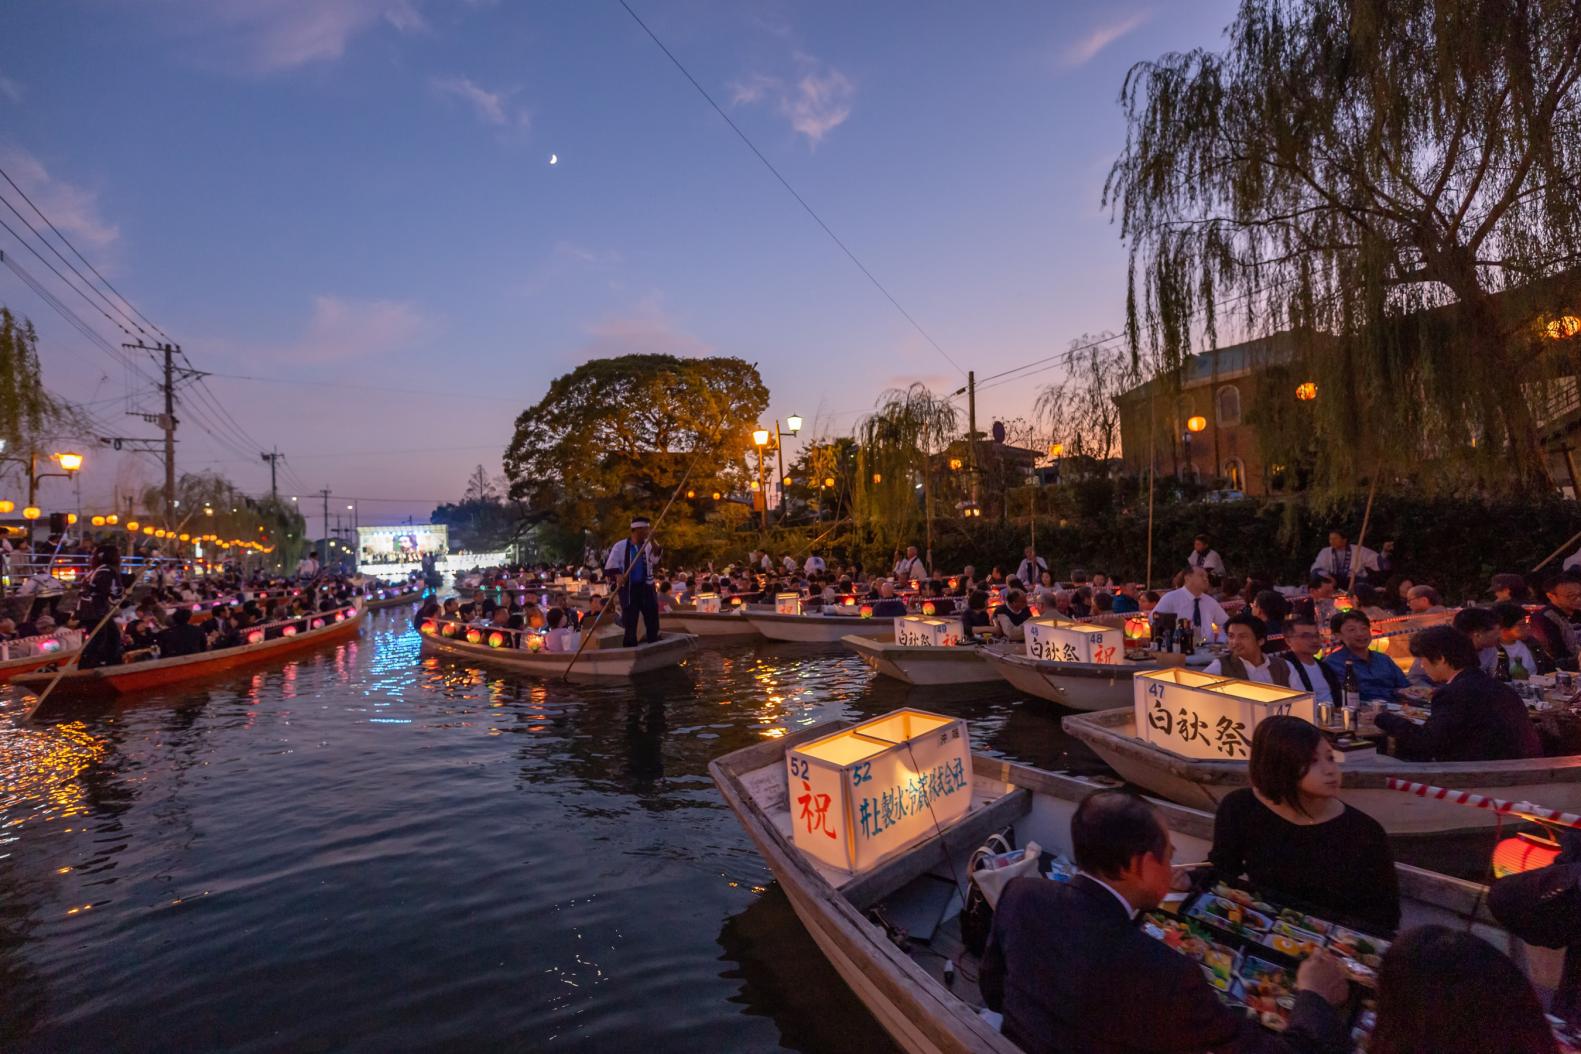 The Hakushu Festival and Parade on Water in memory of Kitahara Hakushu